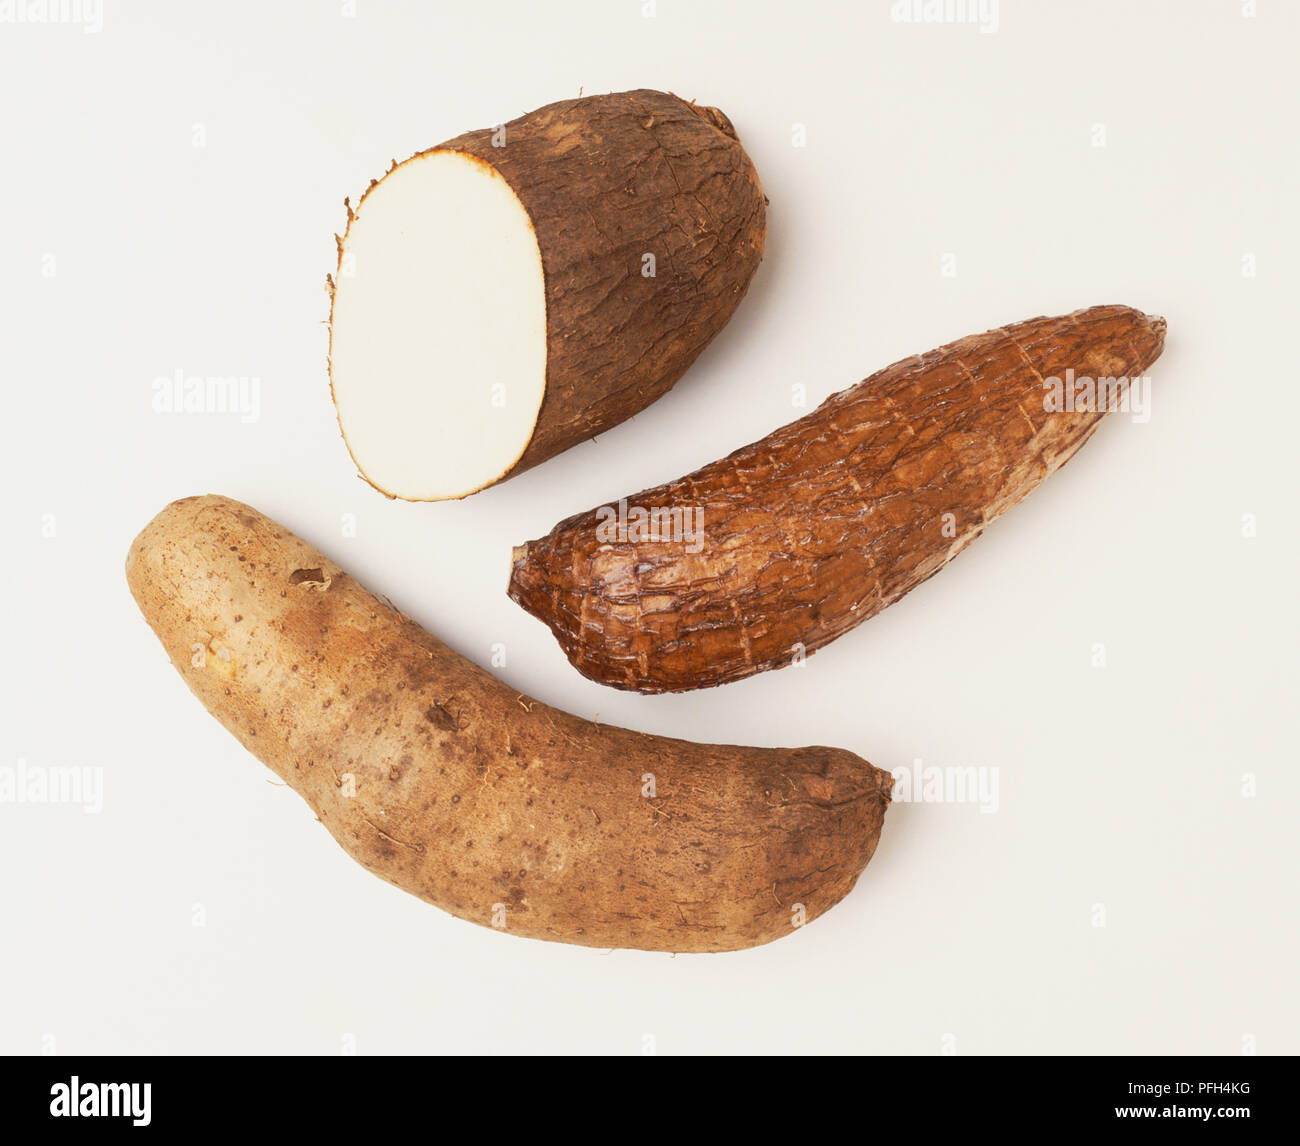 Yam and Cassava tubers Stock Photo